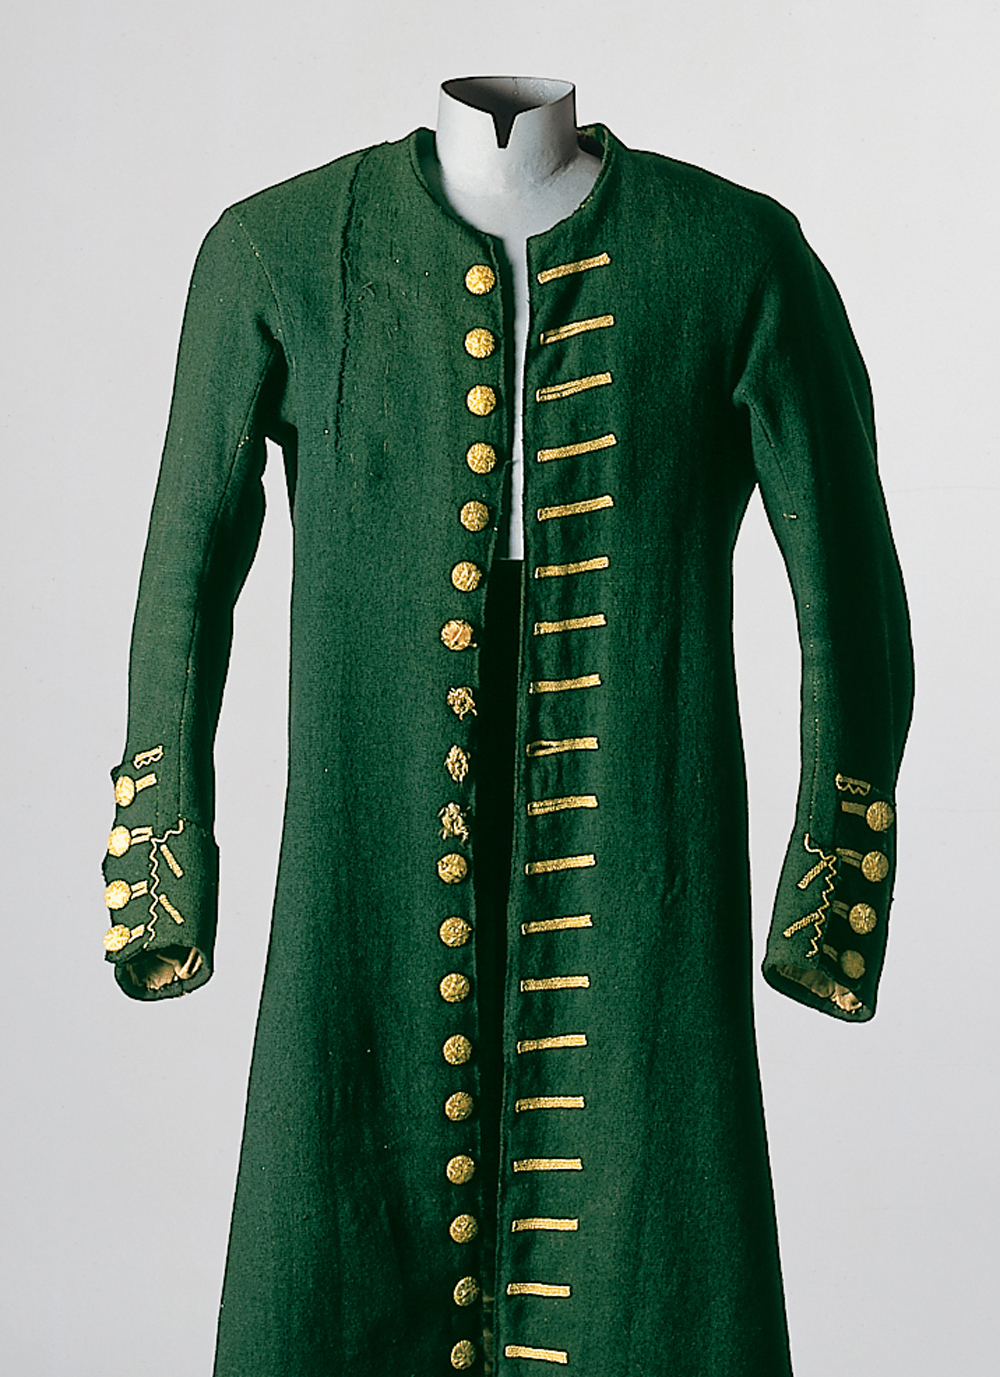 Eine Kleiderpuppe präsentiert einen sogenannten "Justaucorps" (Rock) in der Farbe waldgrün mit goldenen Knöpfen und verzierten Knopflöchern. Das Kleidungsstück für Herren stammt aus Lenggries, und ist datiert um 1810.